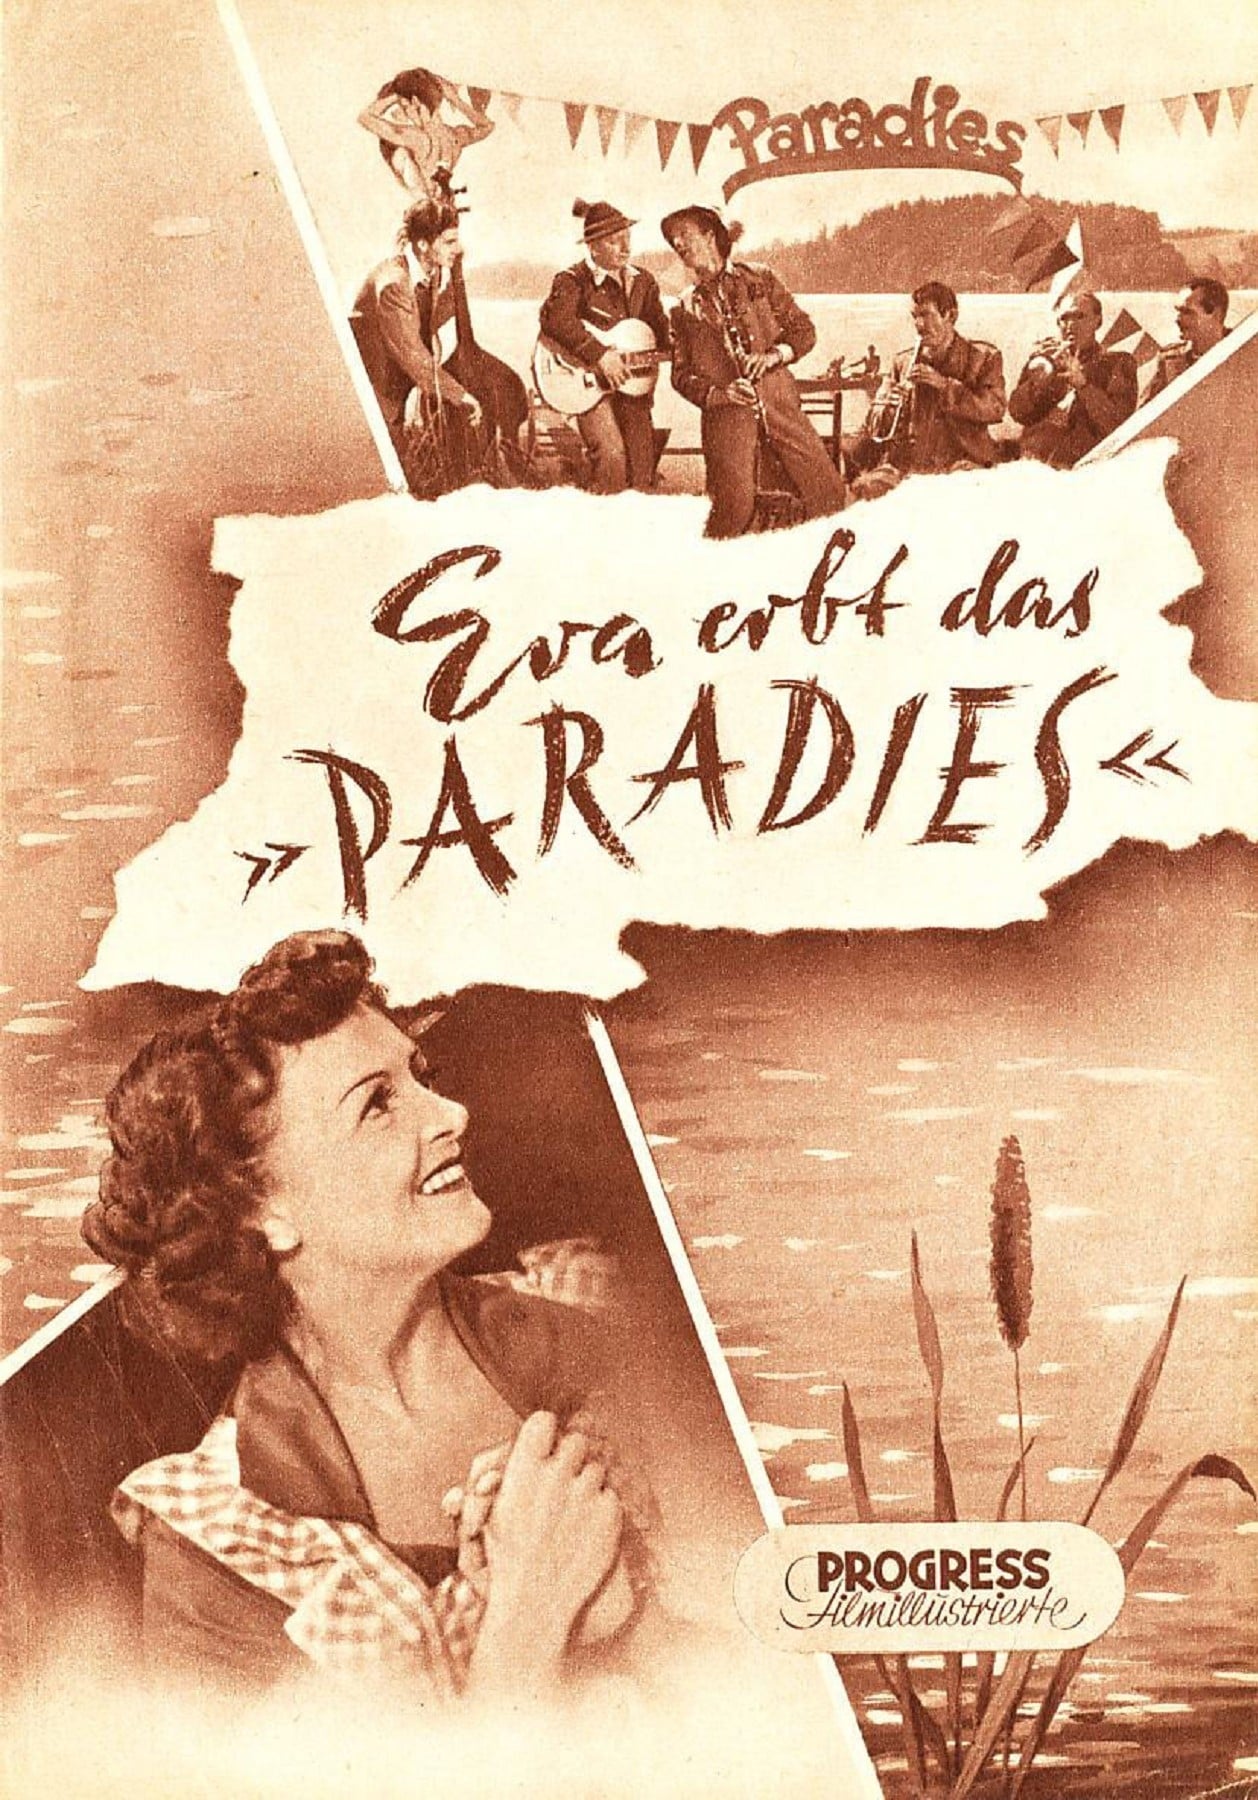 Eva erbt das Paradies (1951)